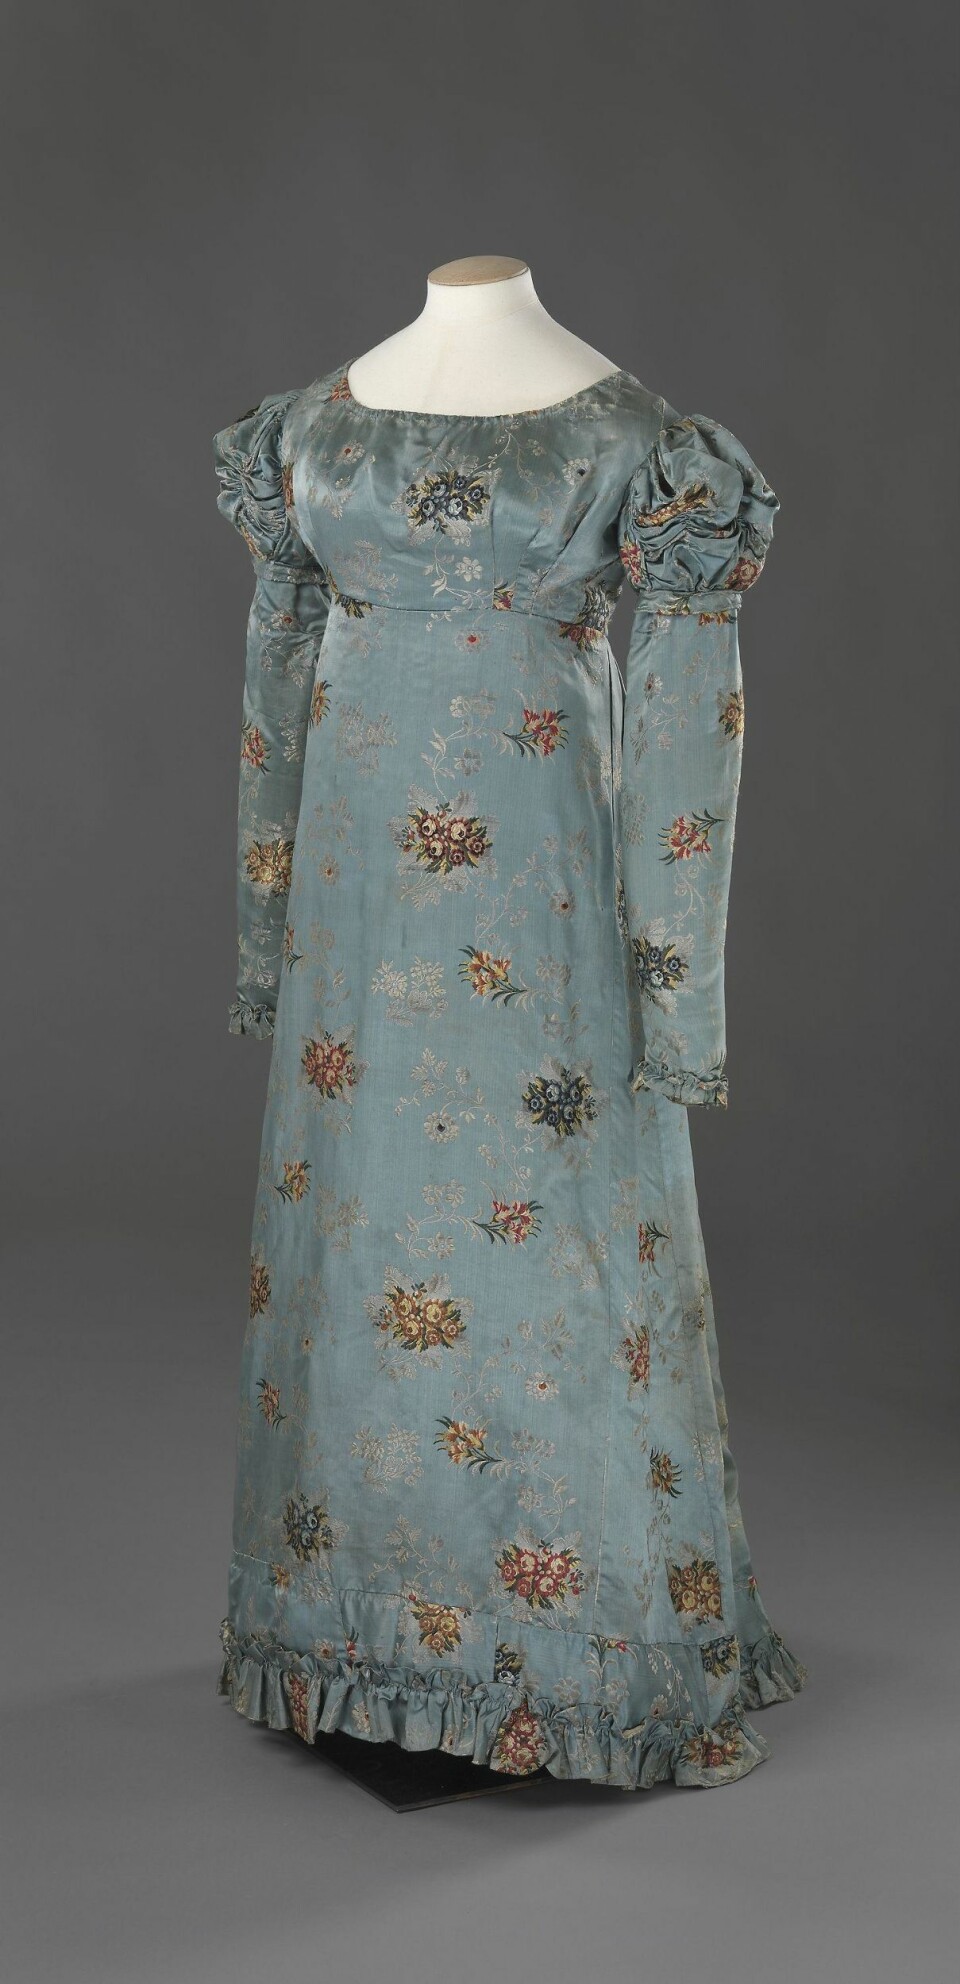 Denne kjolen er fra første halvdel av 1820-tallet og ble sannsynligvis brukt av den lille eliten i Norge. Kjolen er laget av stoff fra 1700-tallet, og trolig omsydd fra en eldre kjole. Det er blant annet mye skjøting i skjørtekanten. (Foto: Nasjonalmuseet for kunst, arkitektur og design)